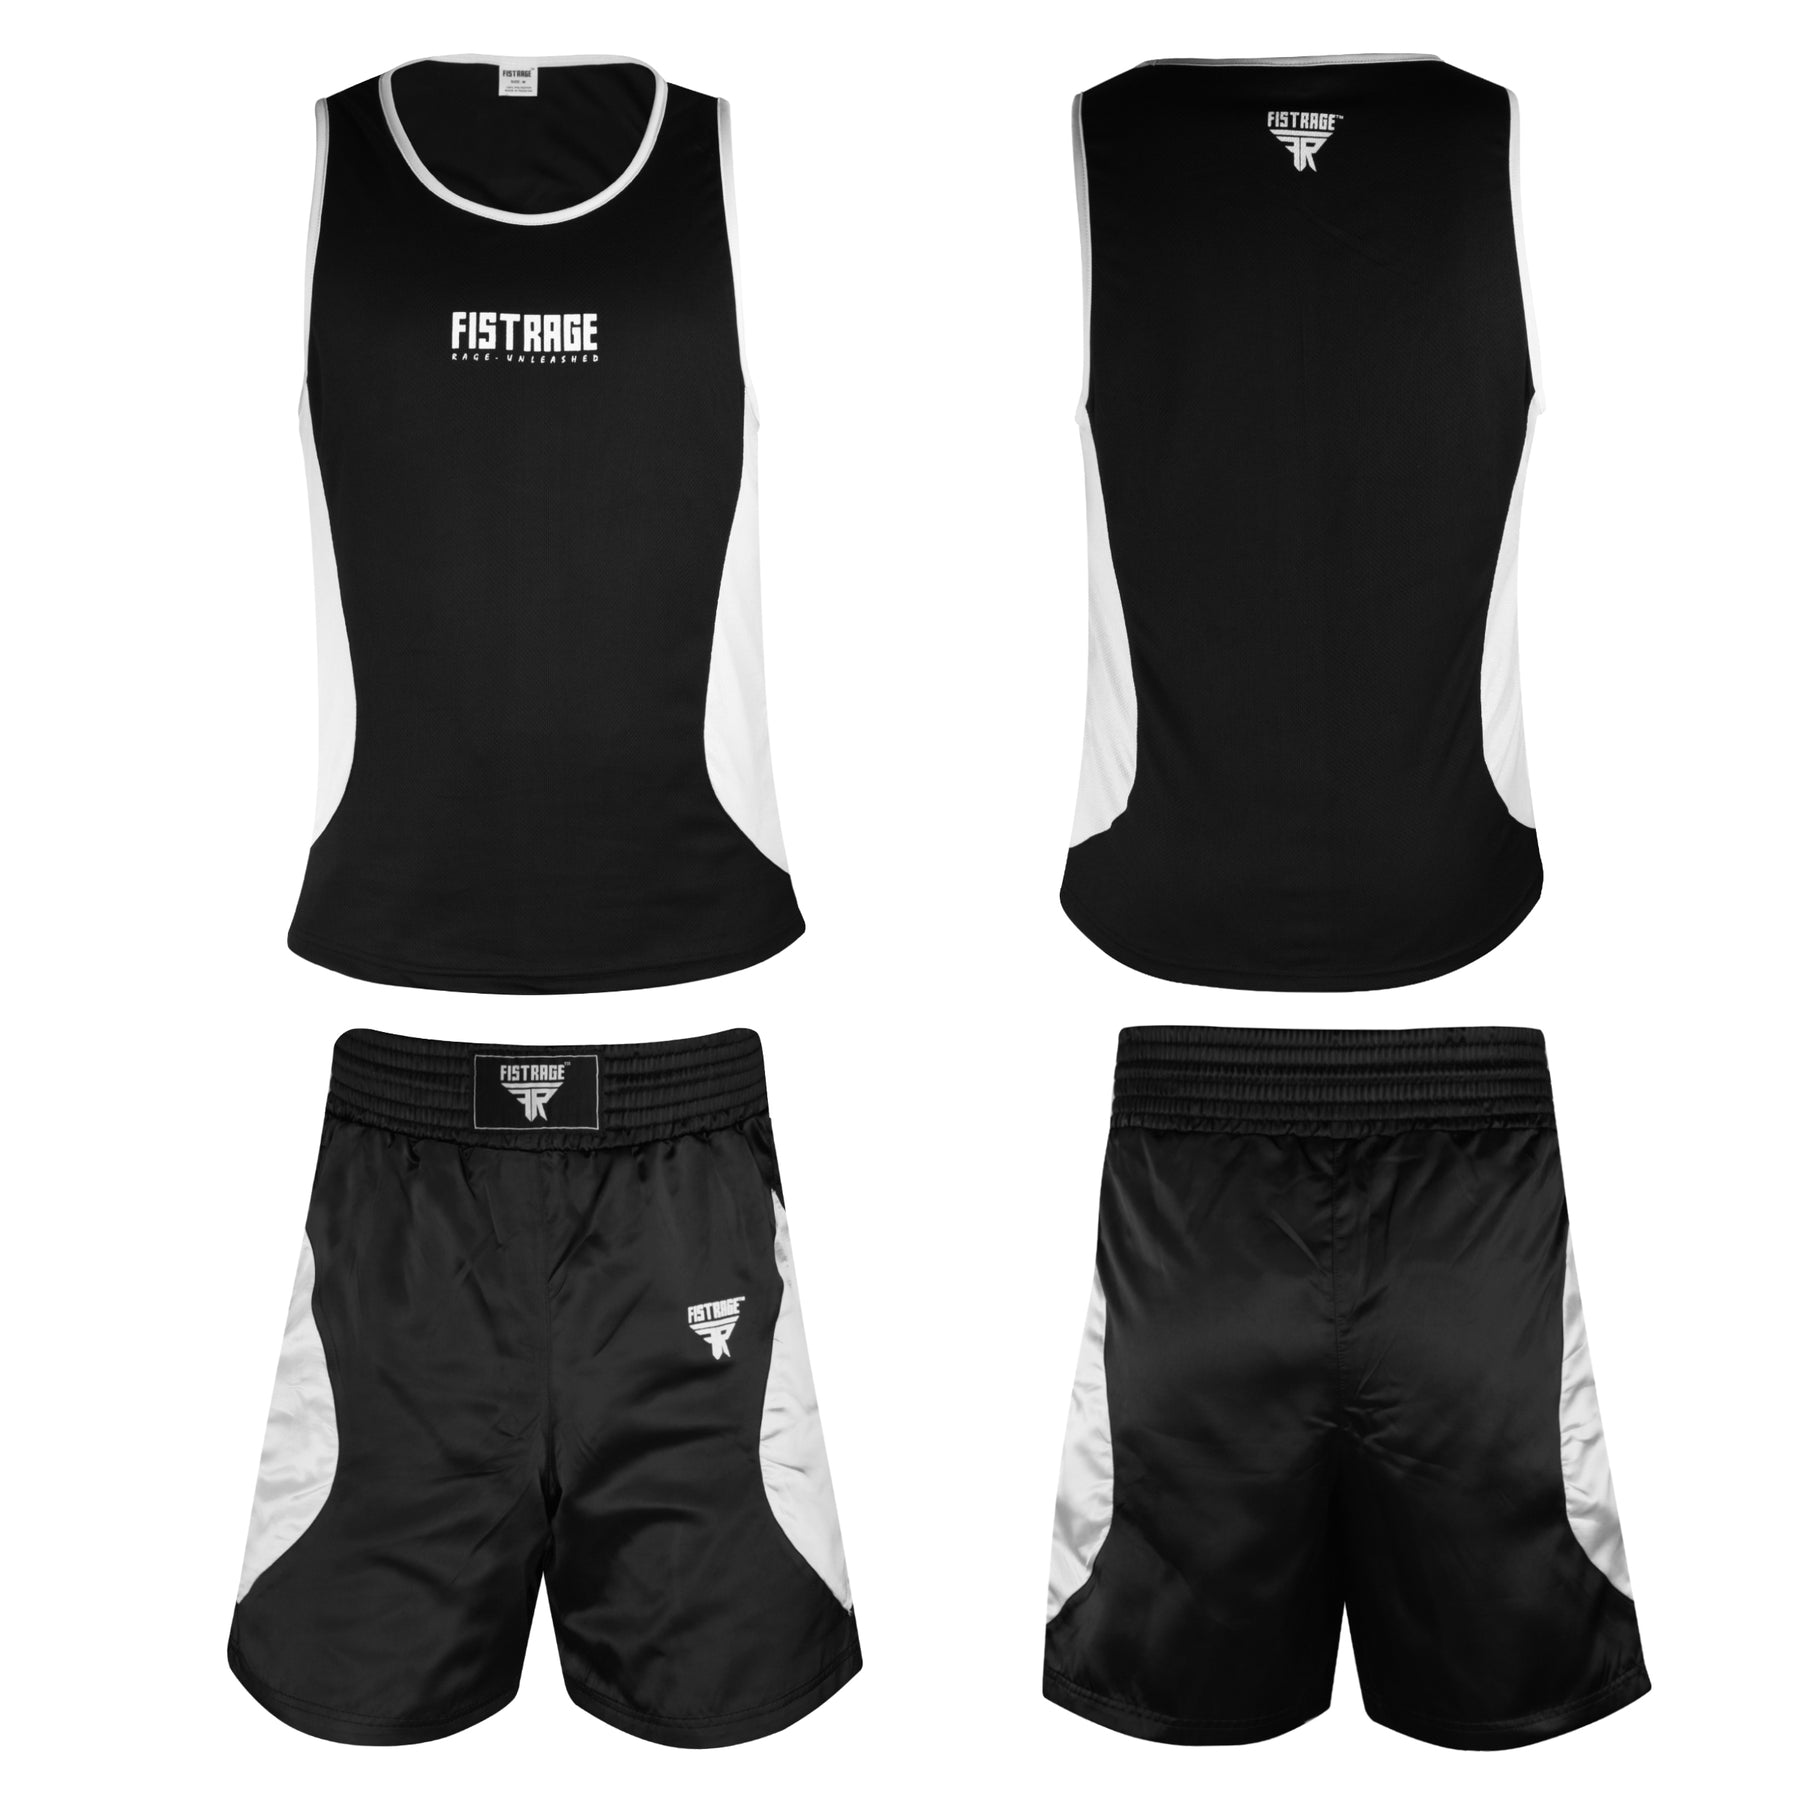 Adults Boxing Uniform Set 2PCS Top & Shorts - Black White